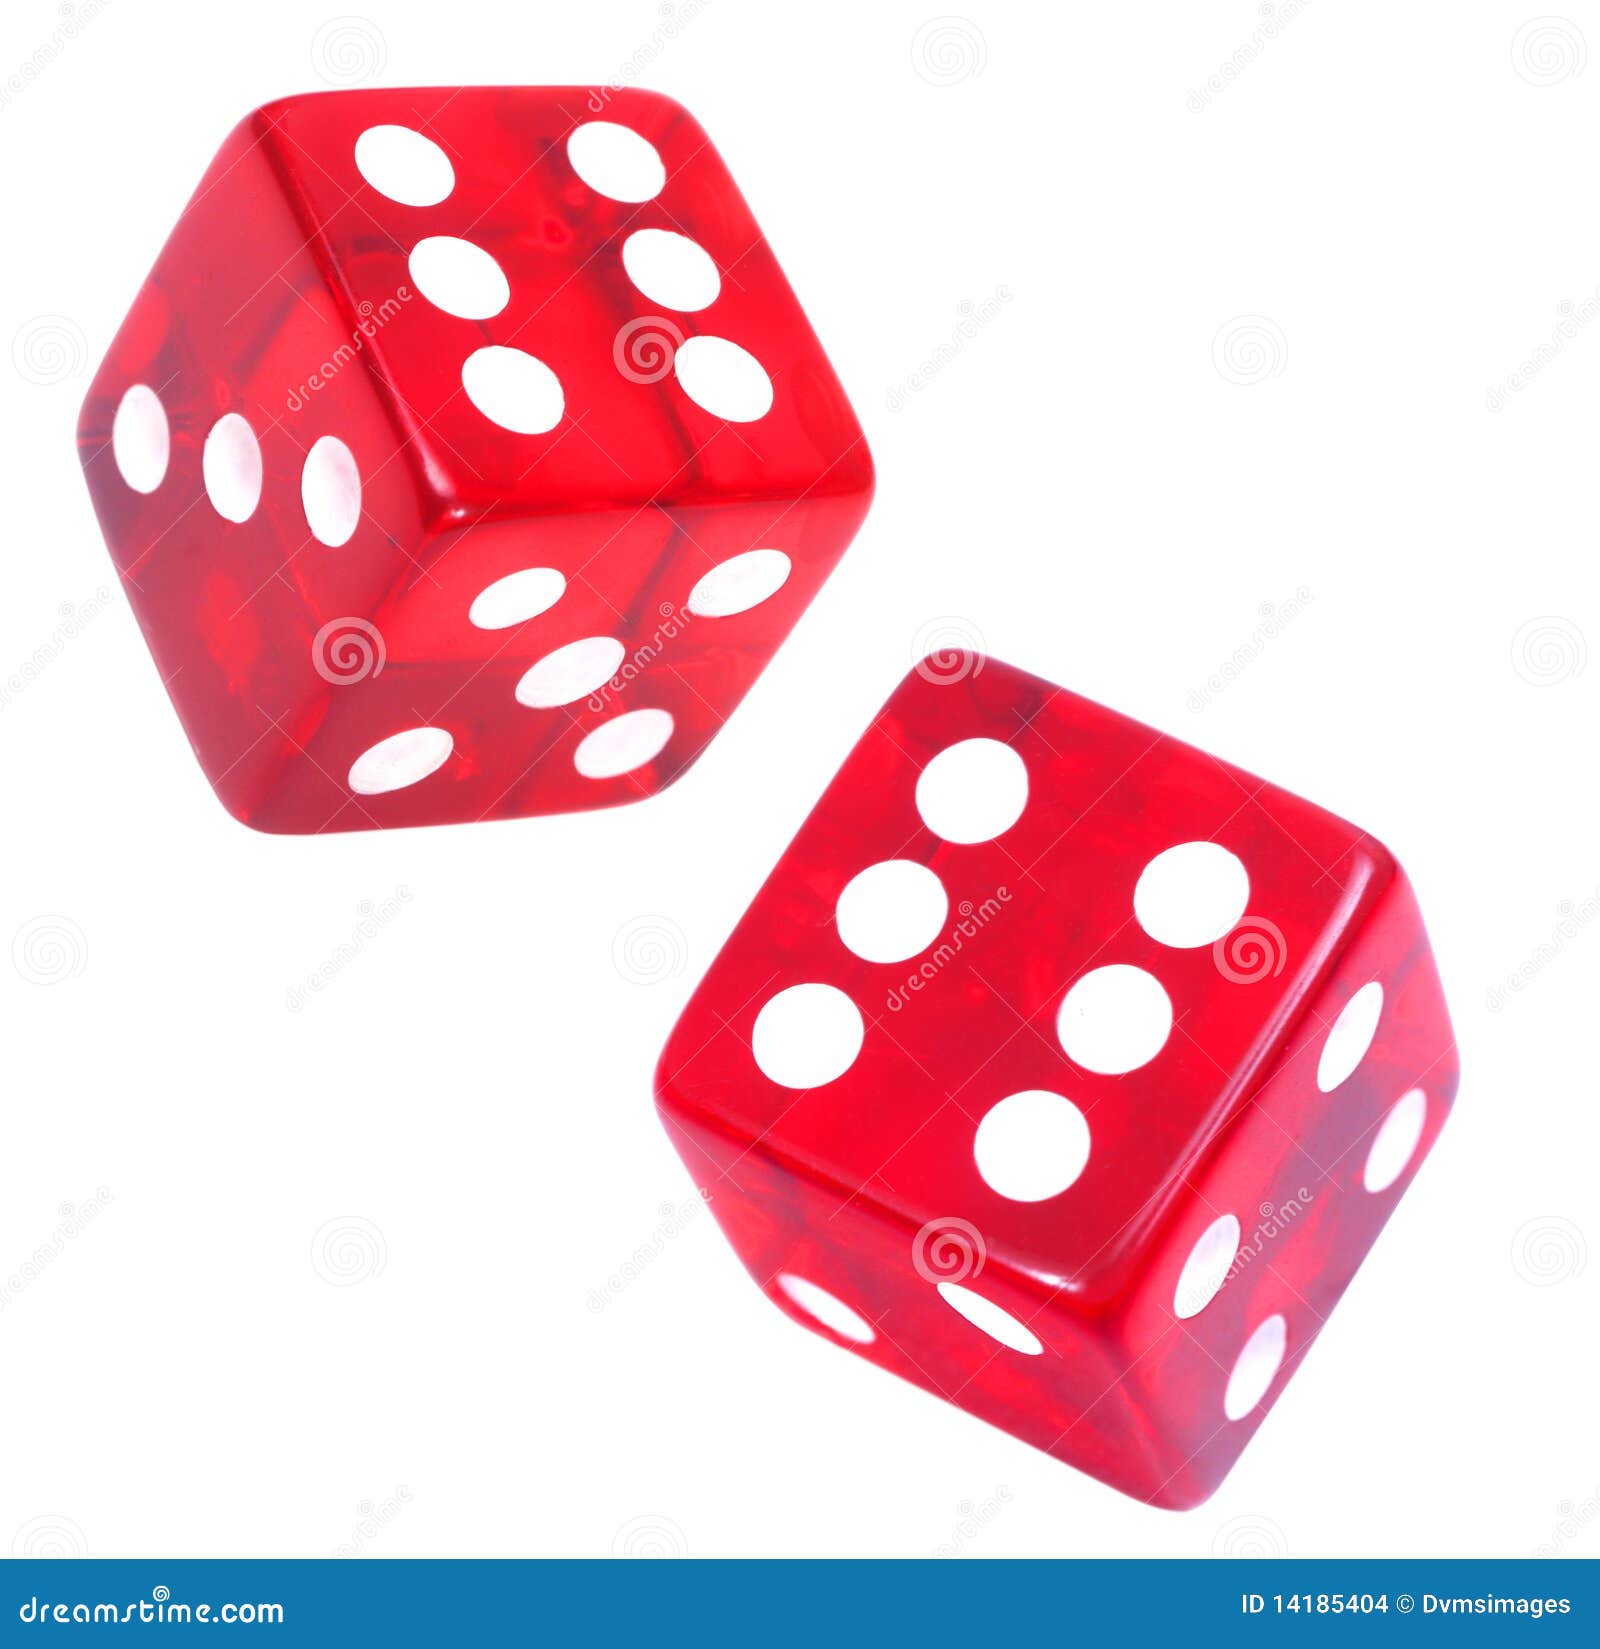 clipart risk dice - photo #7